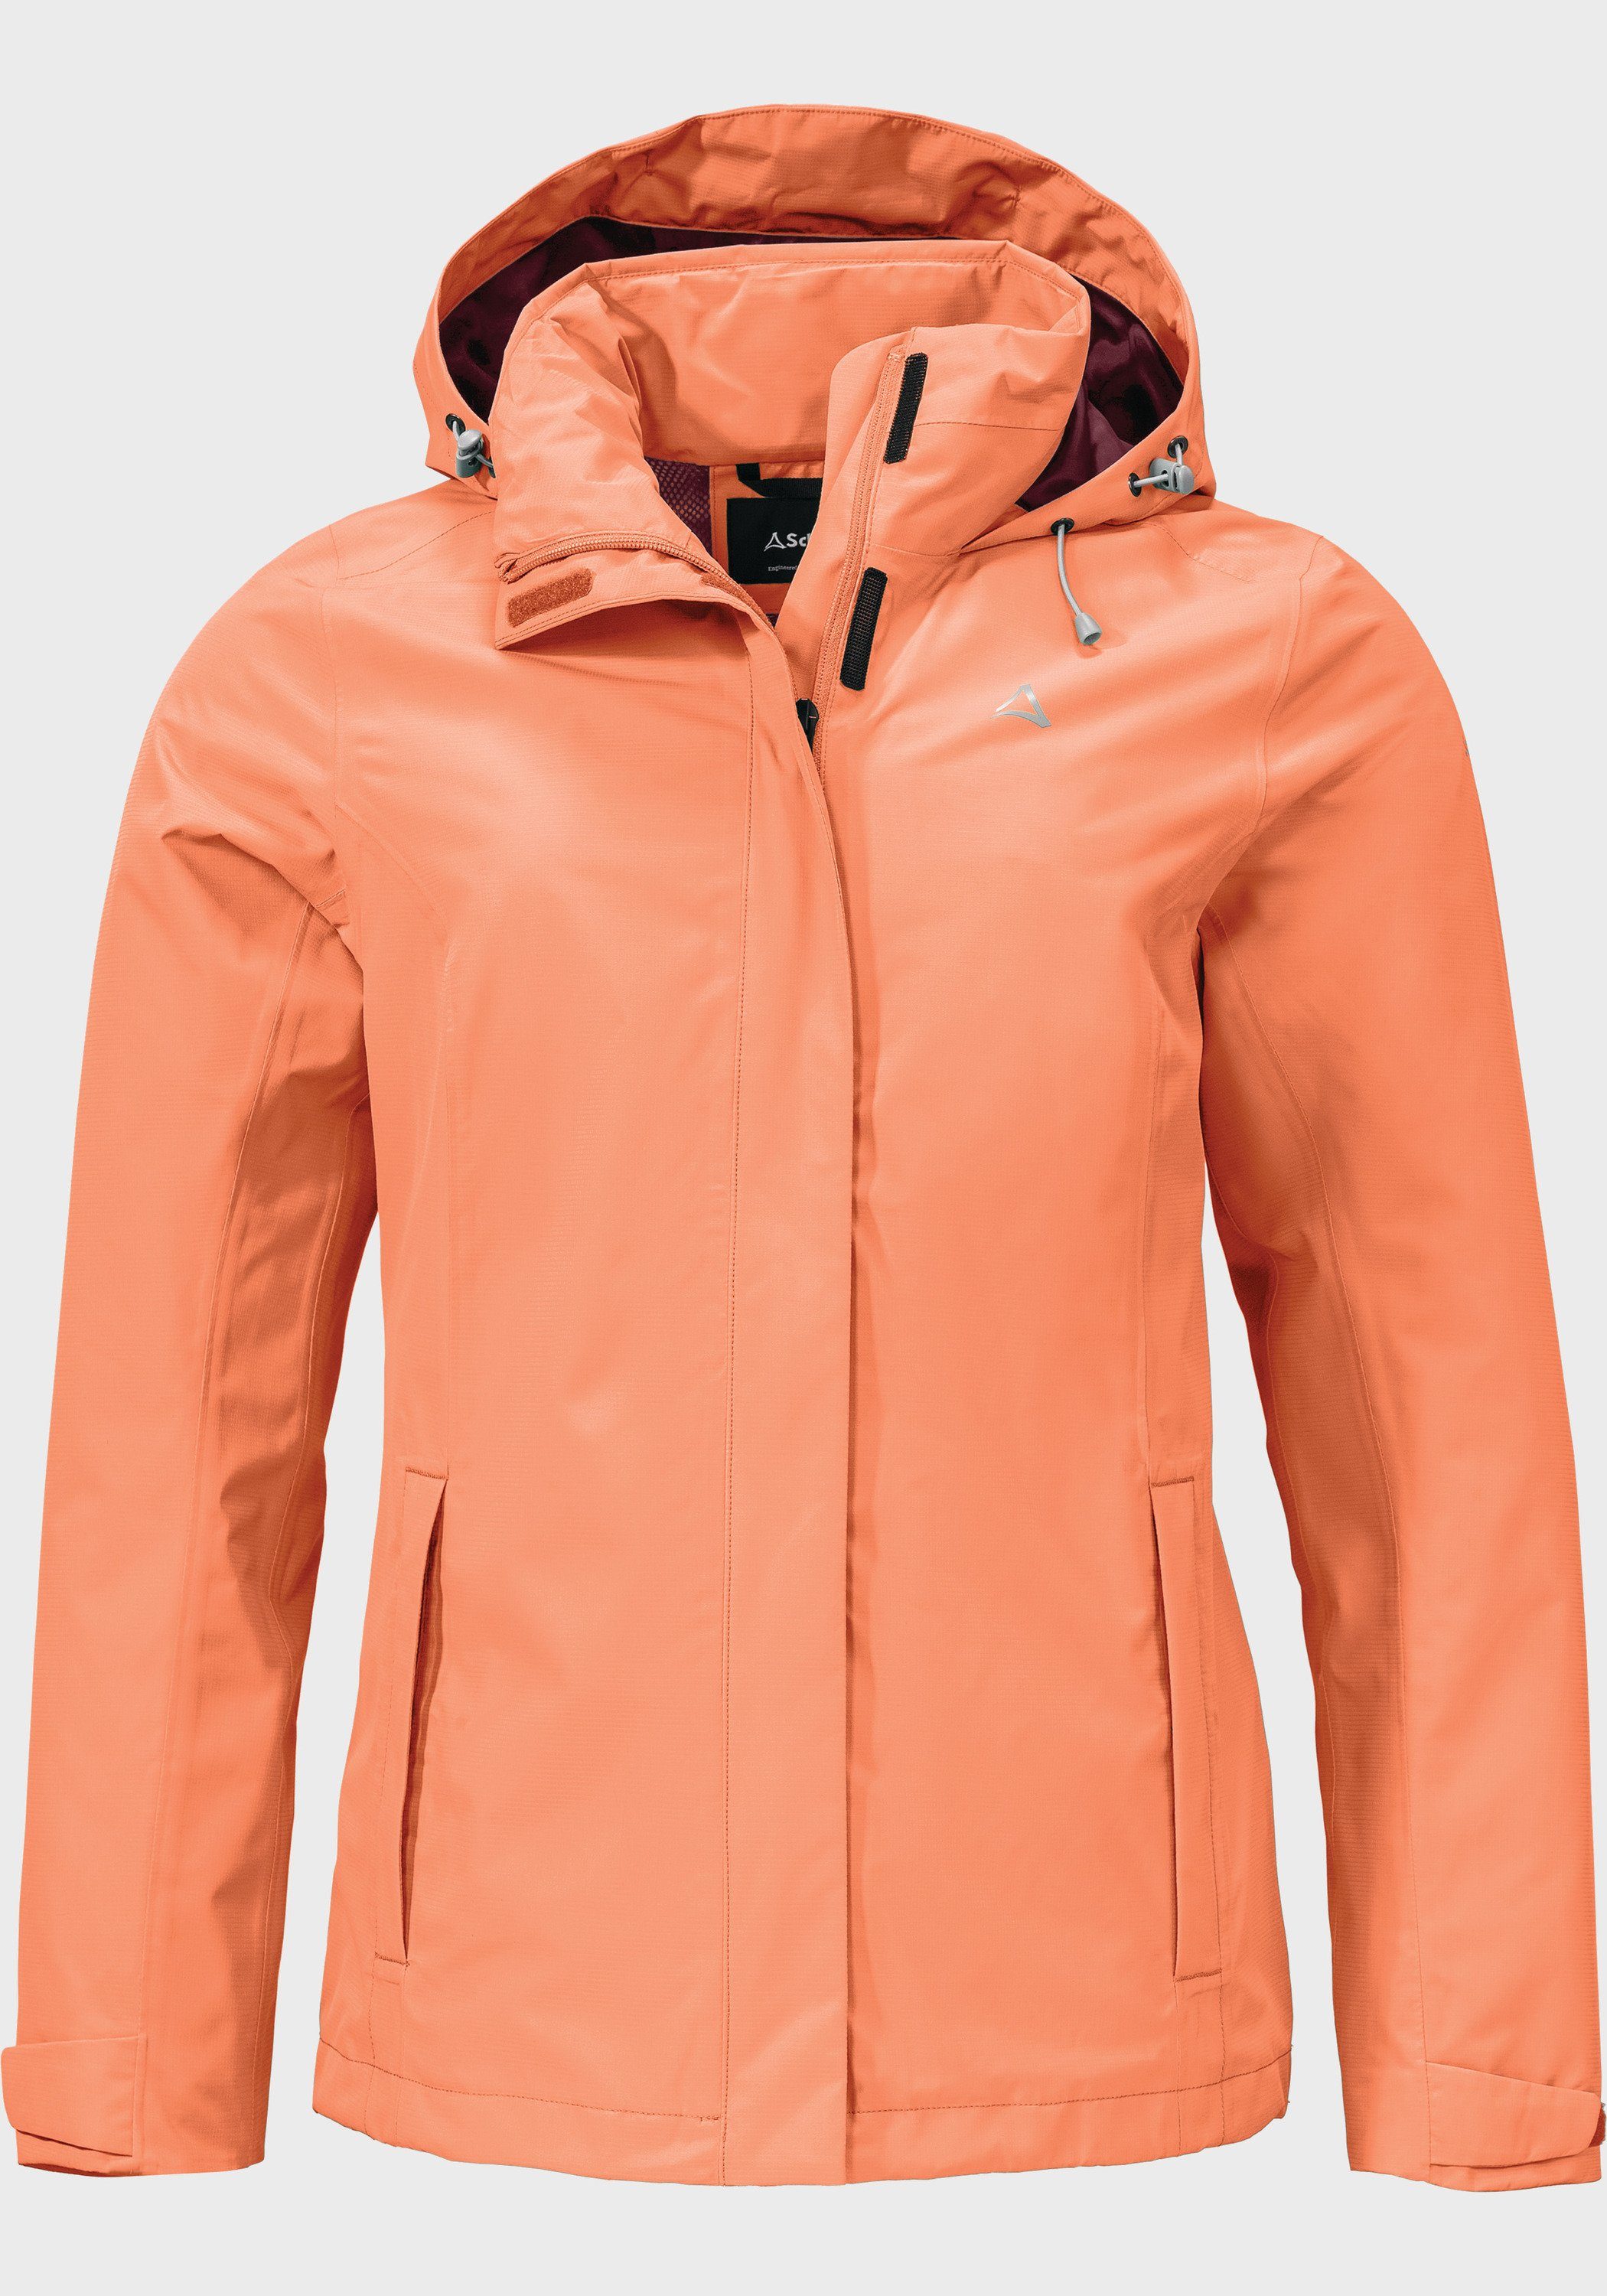 Jacket Gmund Outdoorjacke Schöffel orange L